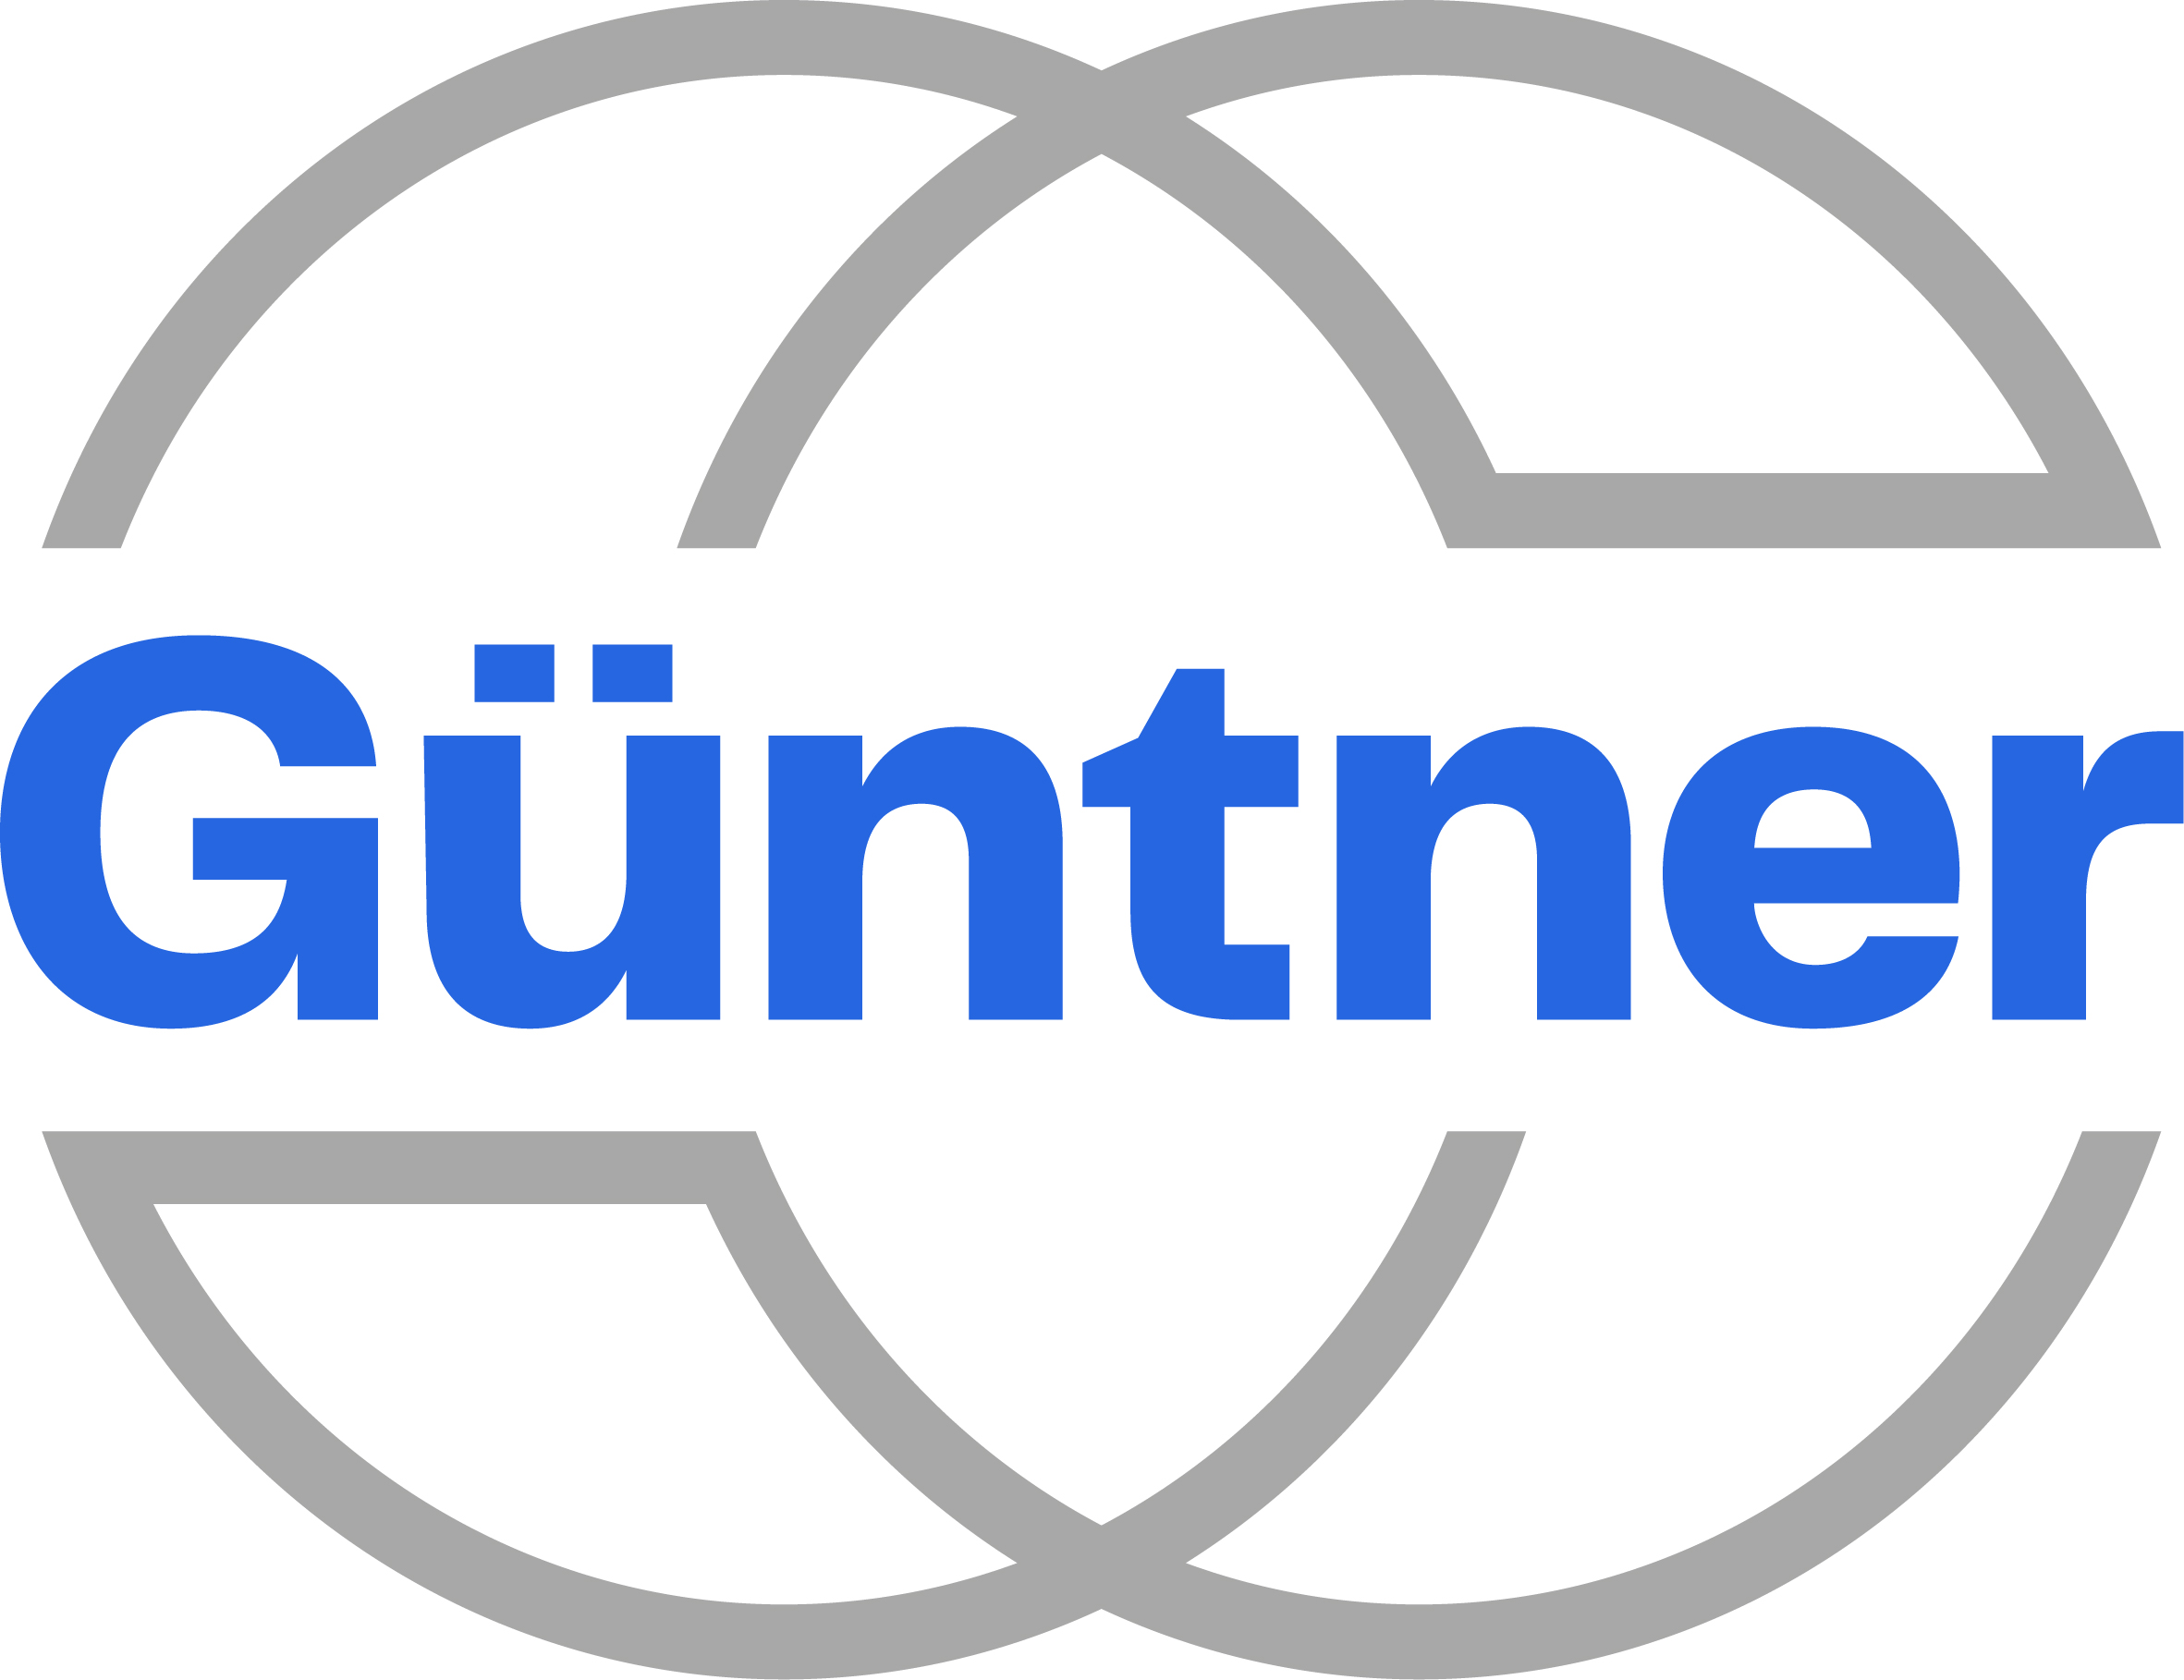 Güntner GmbH & Co. KG